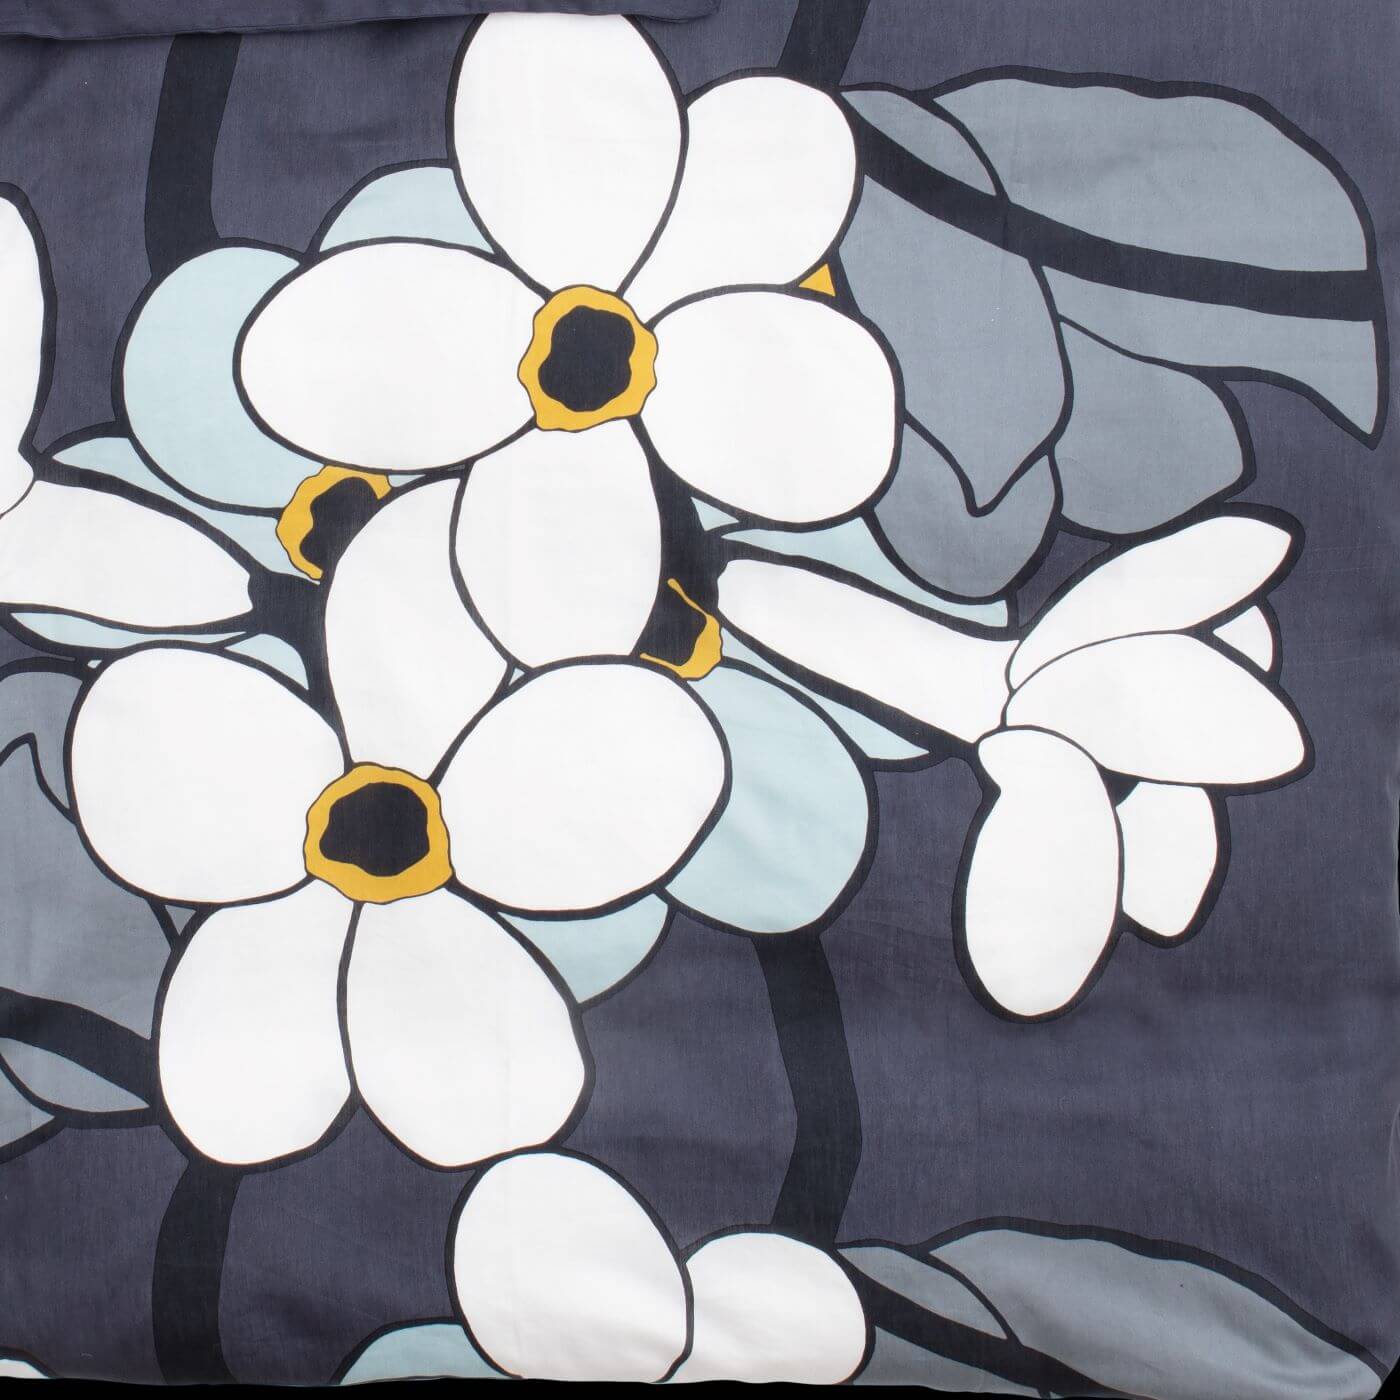 Pościel w kwiaty KUKKATARHA. Wzór w duże białe kwiaty szarej pościeli satyna bawełniana. Skandynawski nowoczesny design